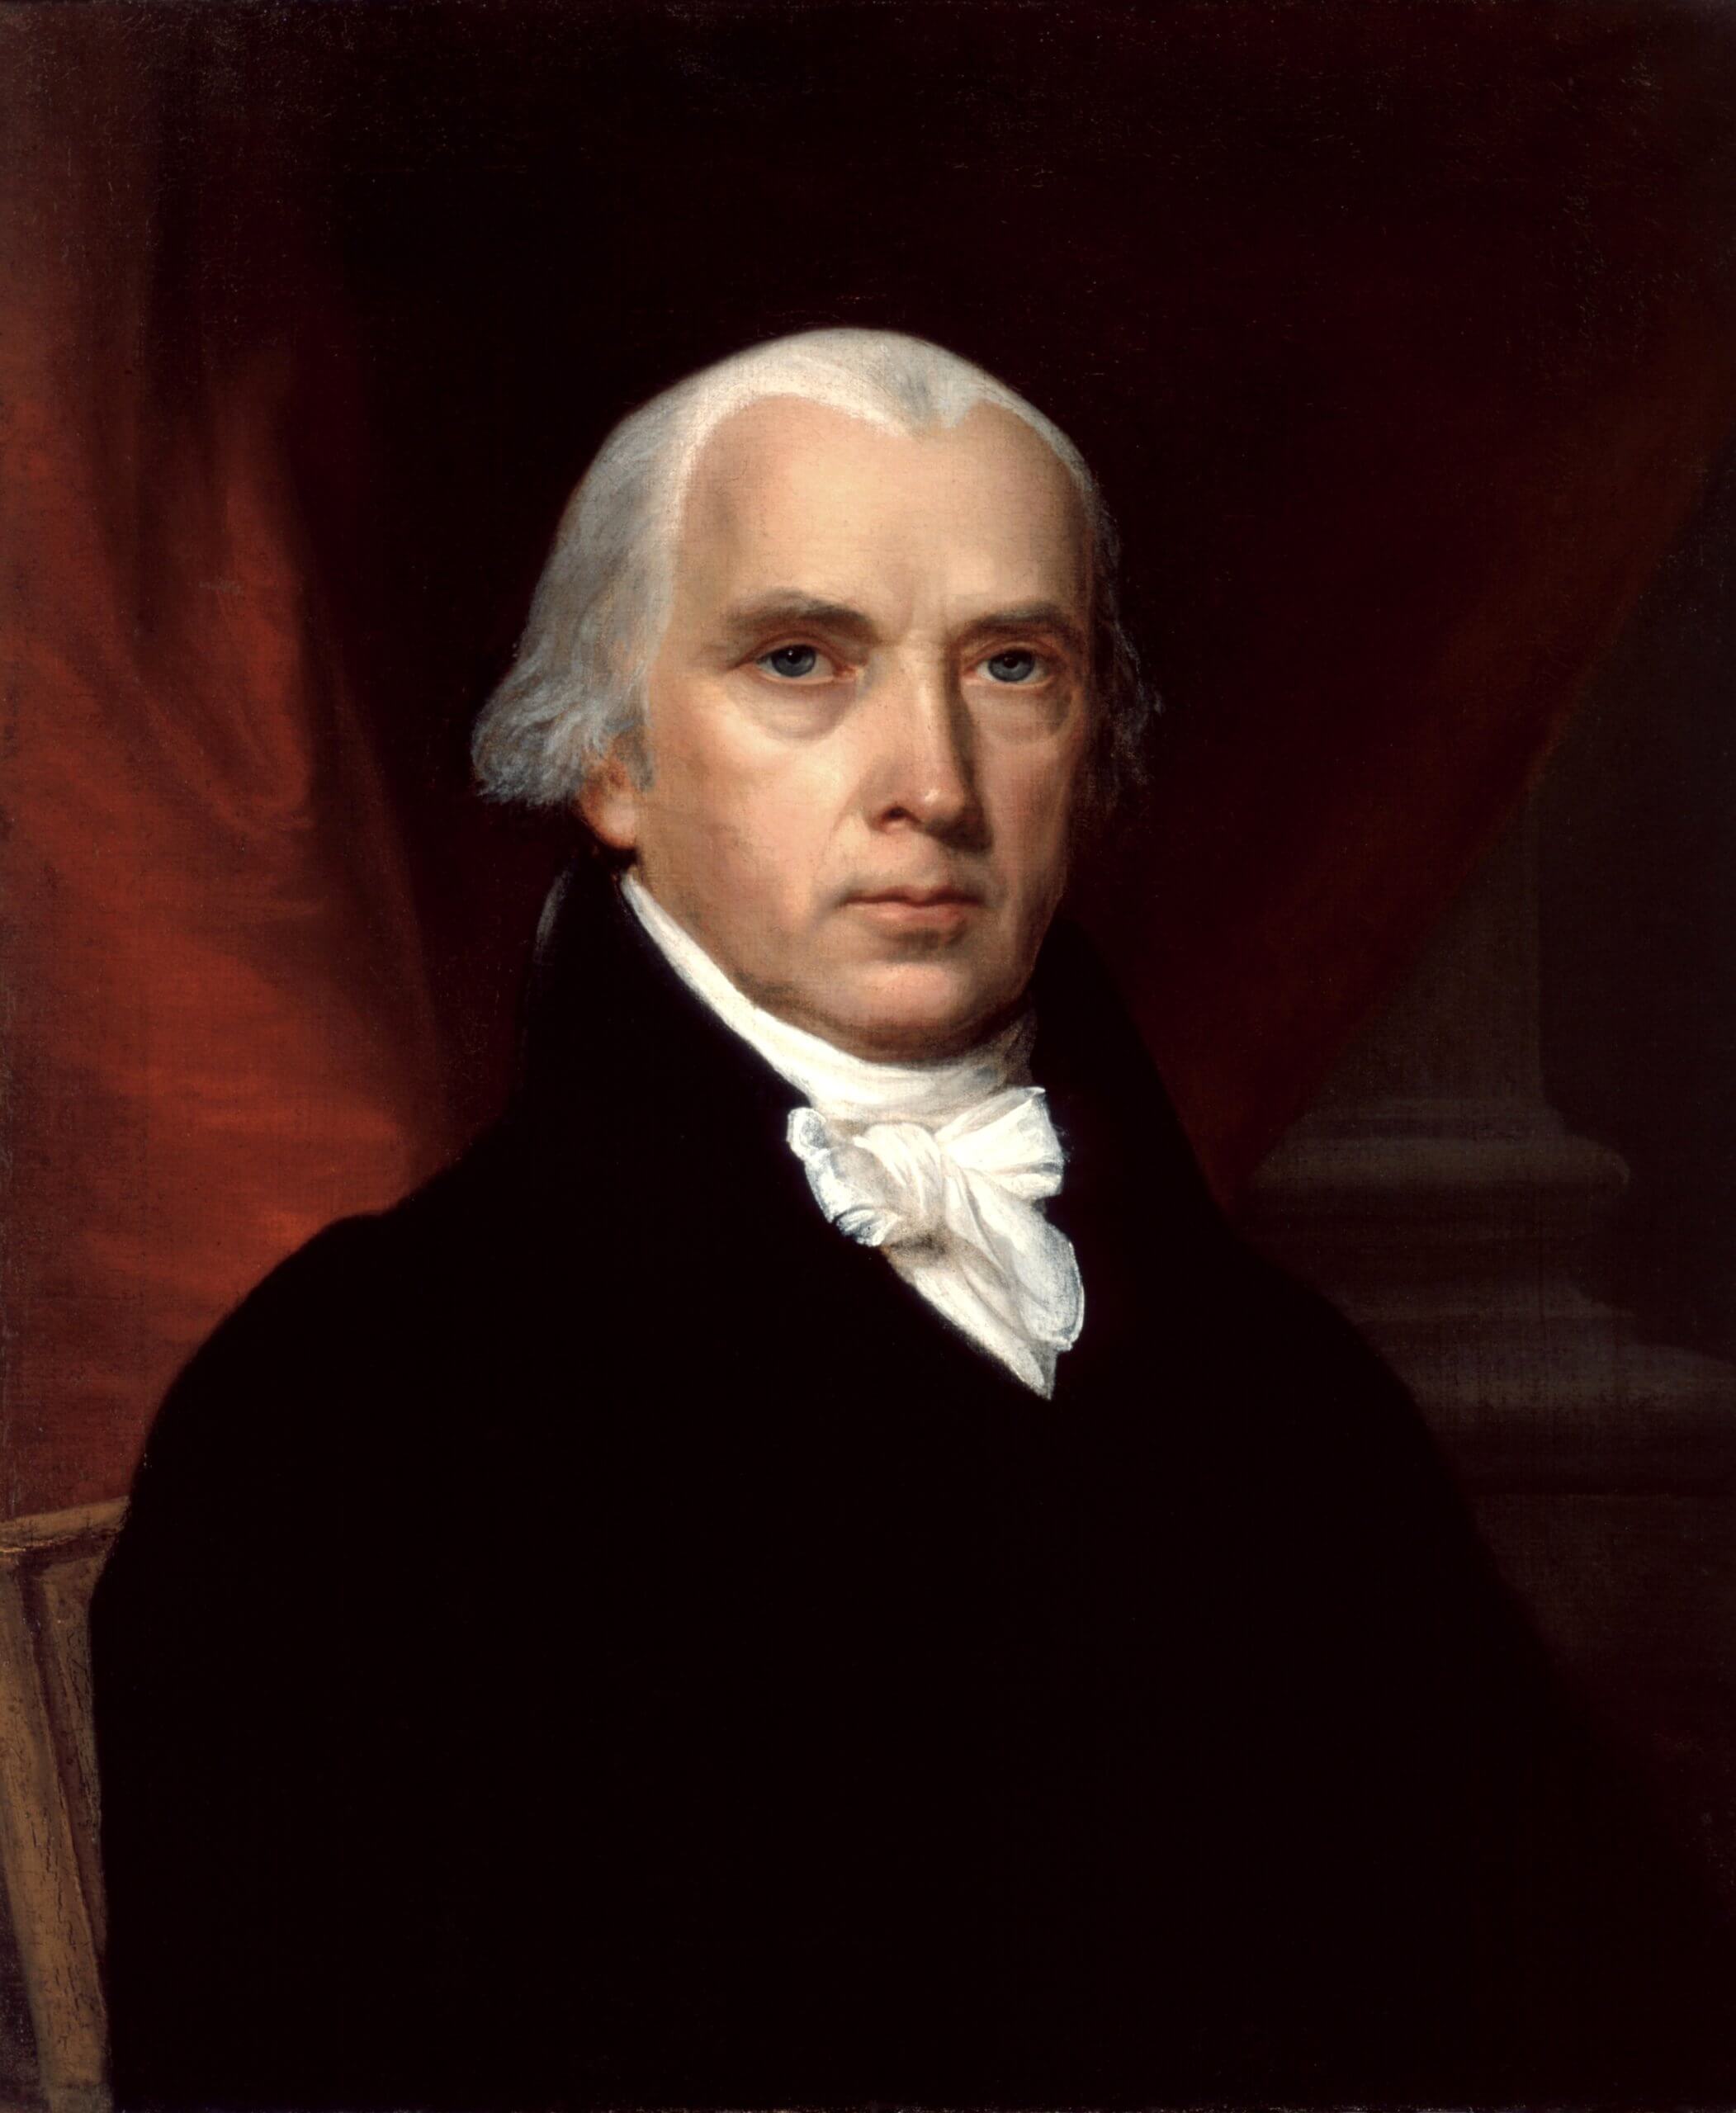 Cela s'est passé un 18 juin - Chronique cturelle -Histoire - James-Madison-scaled